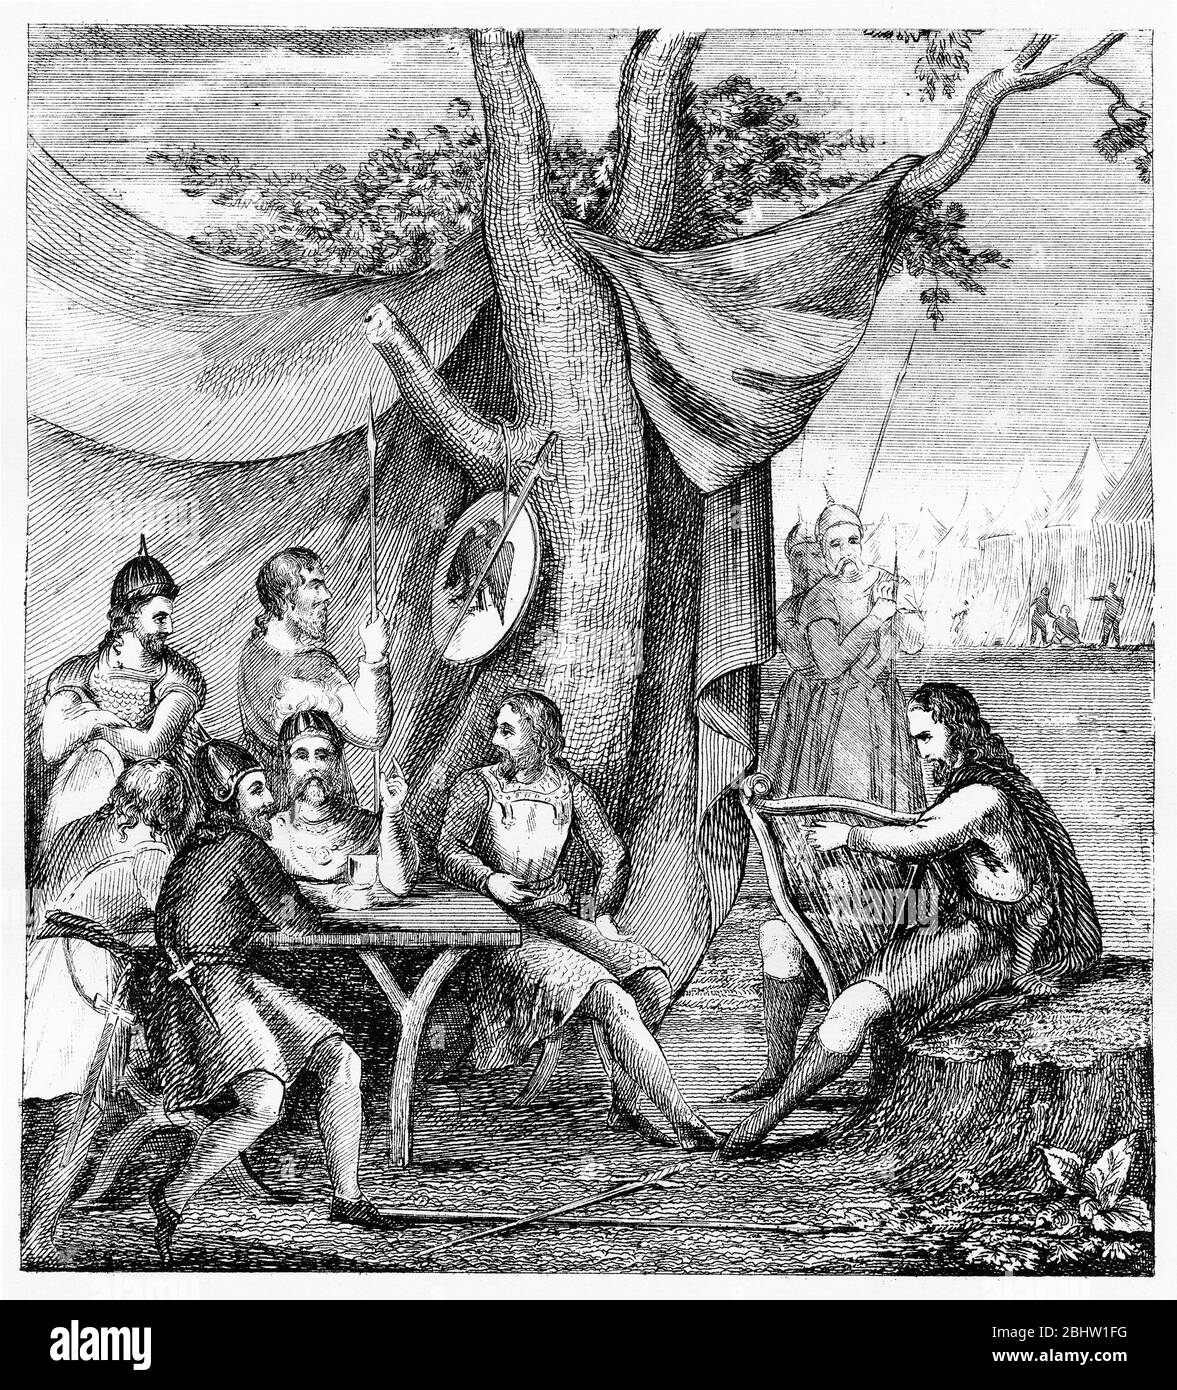 Incisione del re sassone Alfred il Grande nel campo danese dei suoi enemies, travestito da un minstrel vagante, per raccogliere l'intelligenza. Foto Stock